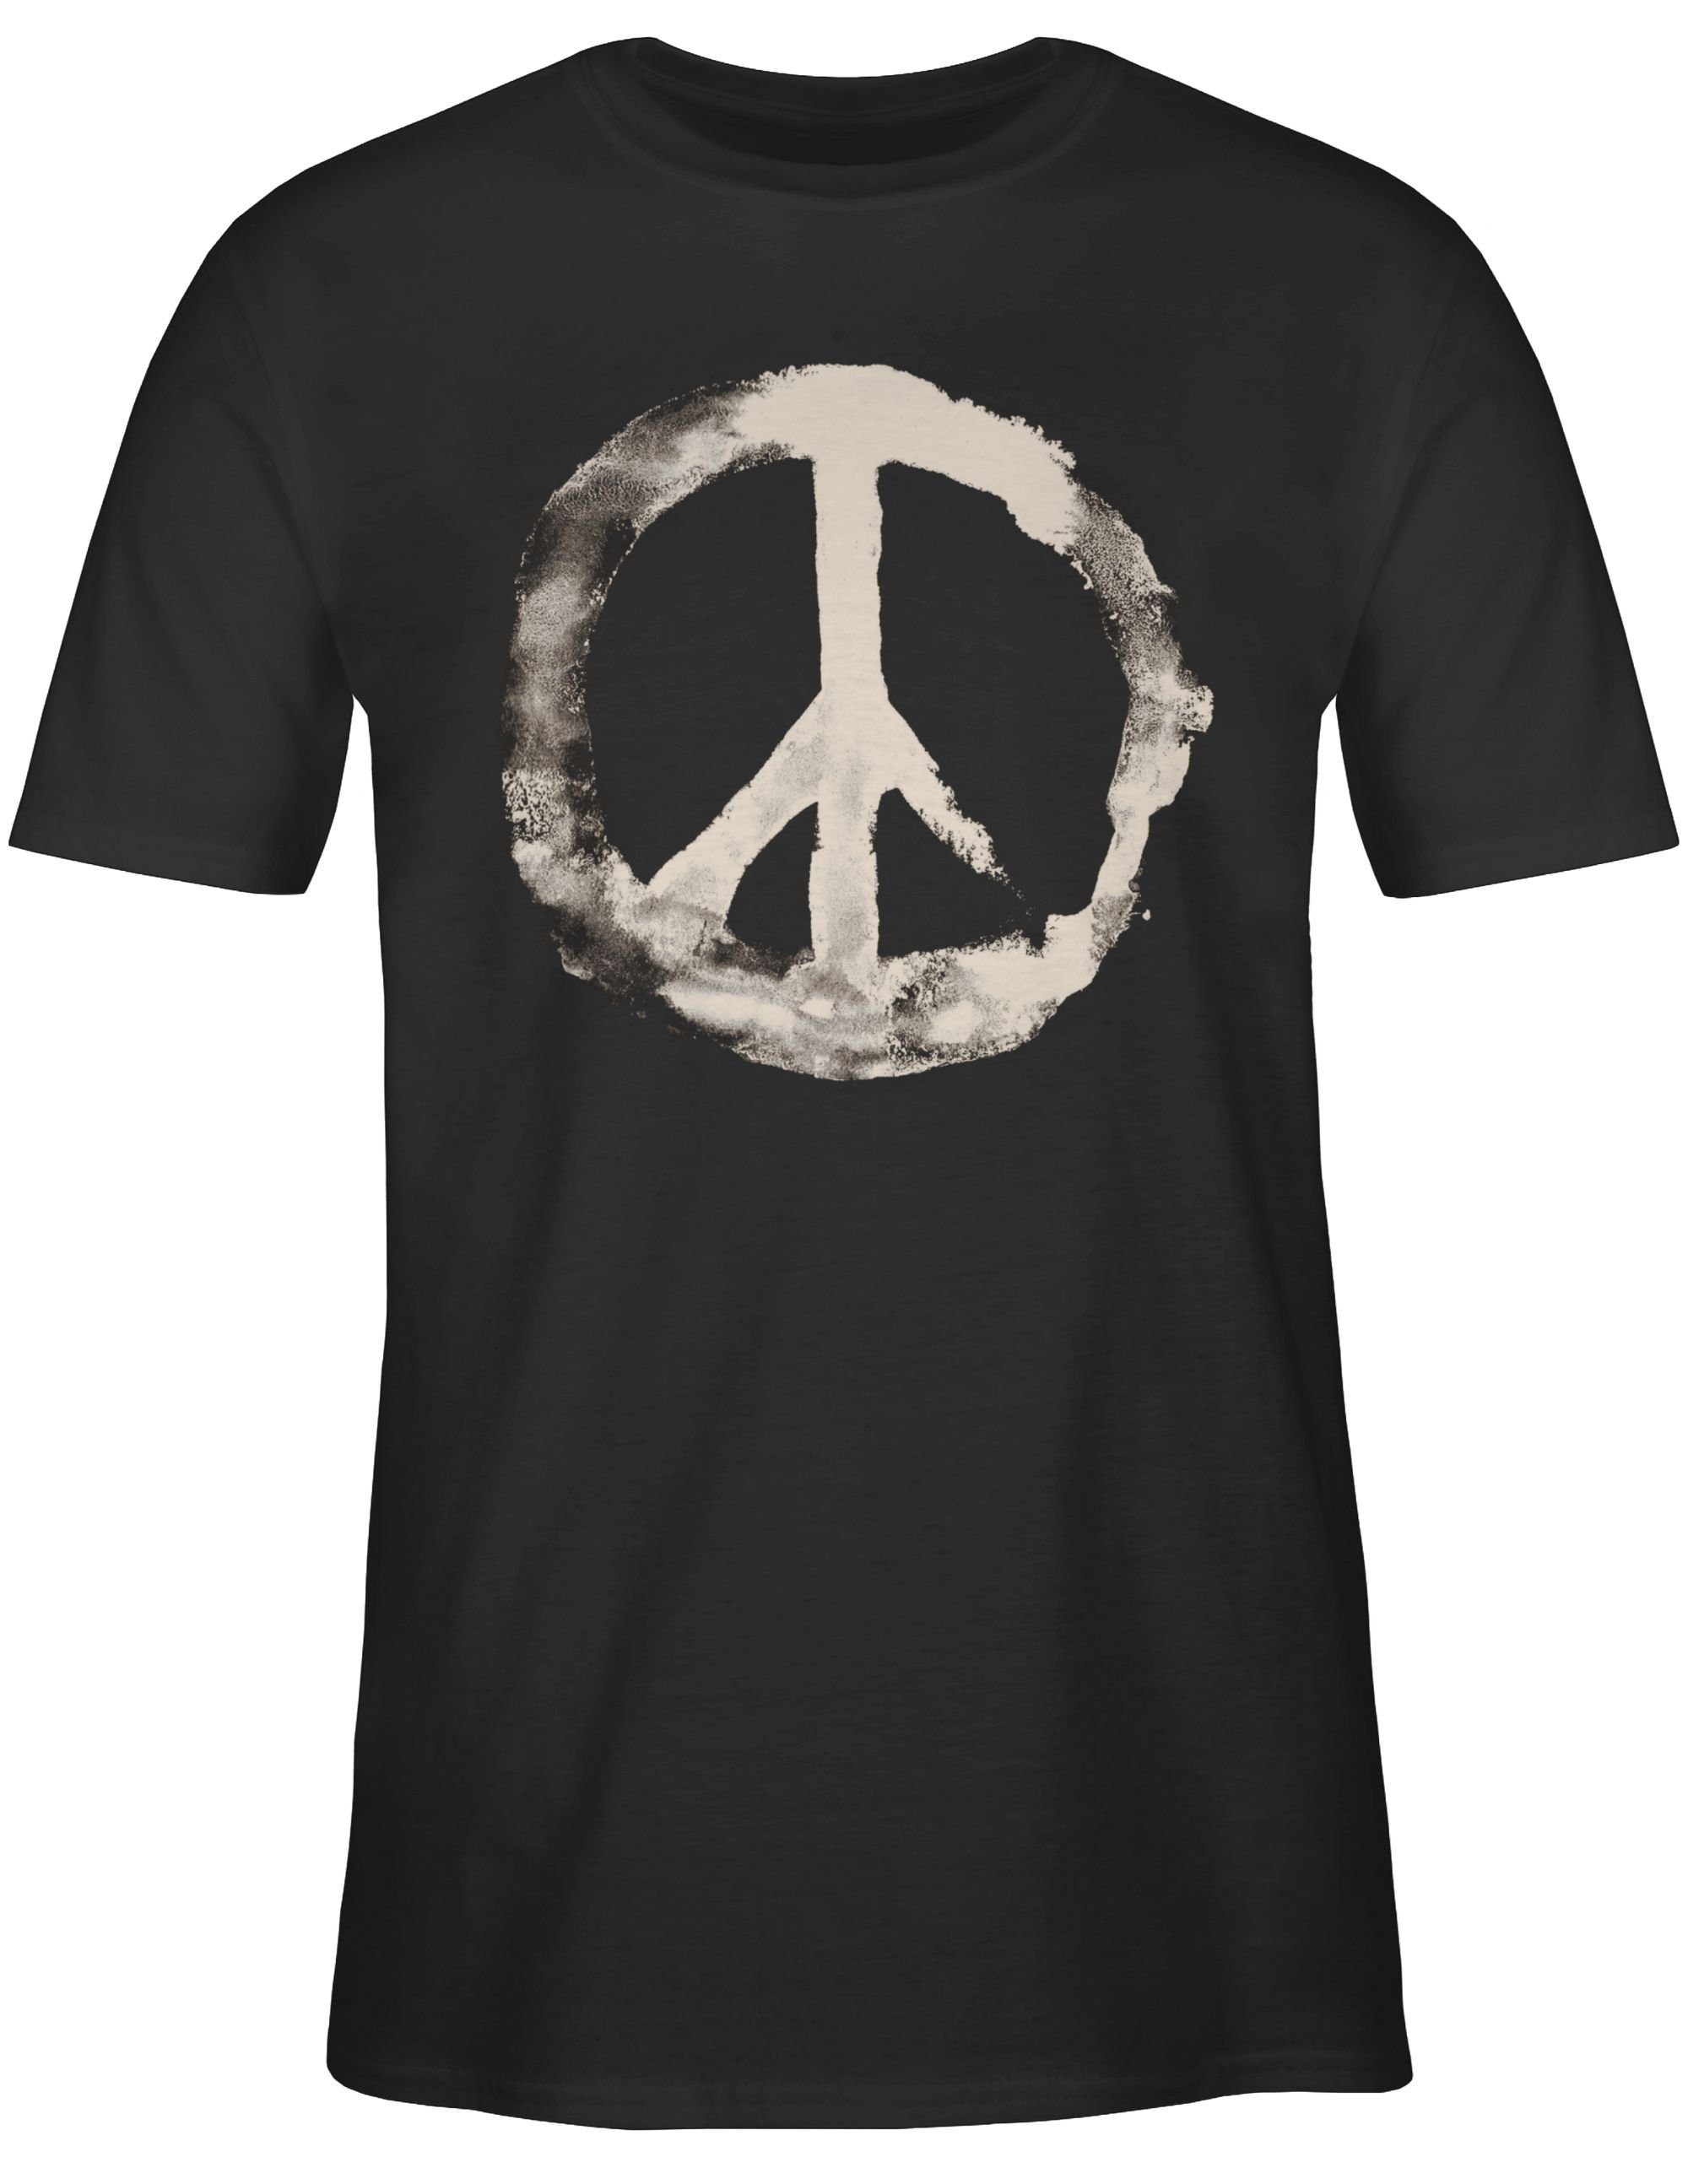 Shirtracer Sprüche T-Shirt 1 Statement weiss Schwarz Peacesymbol Frieden -